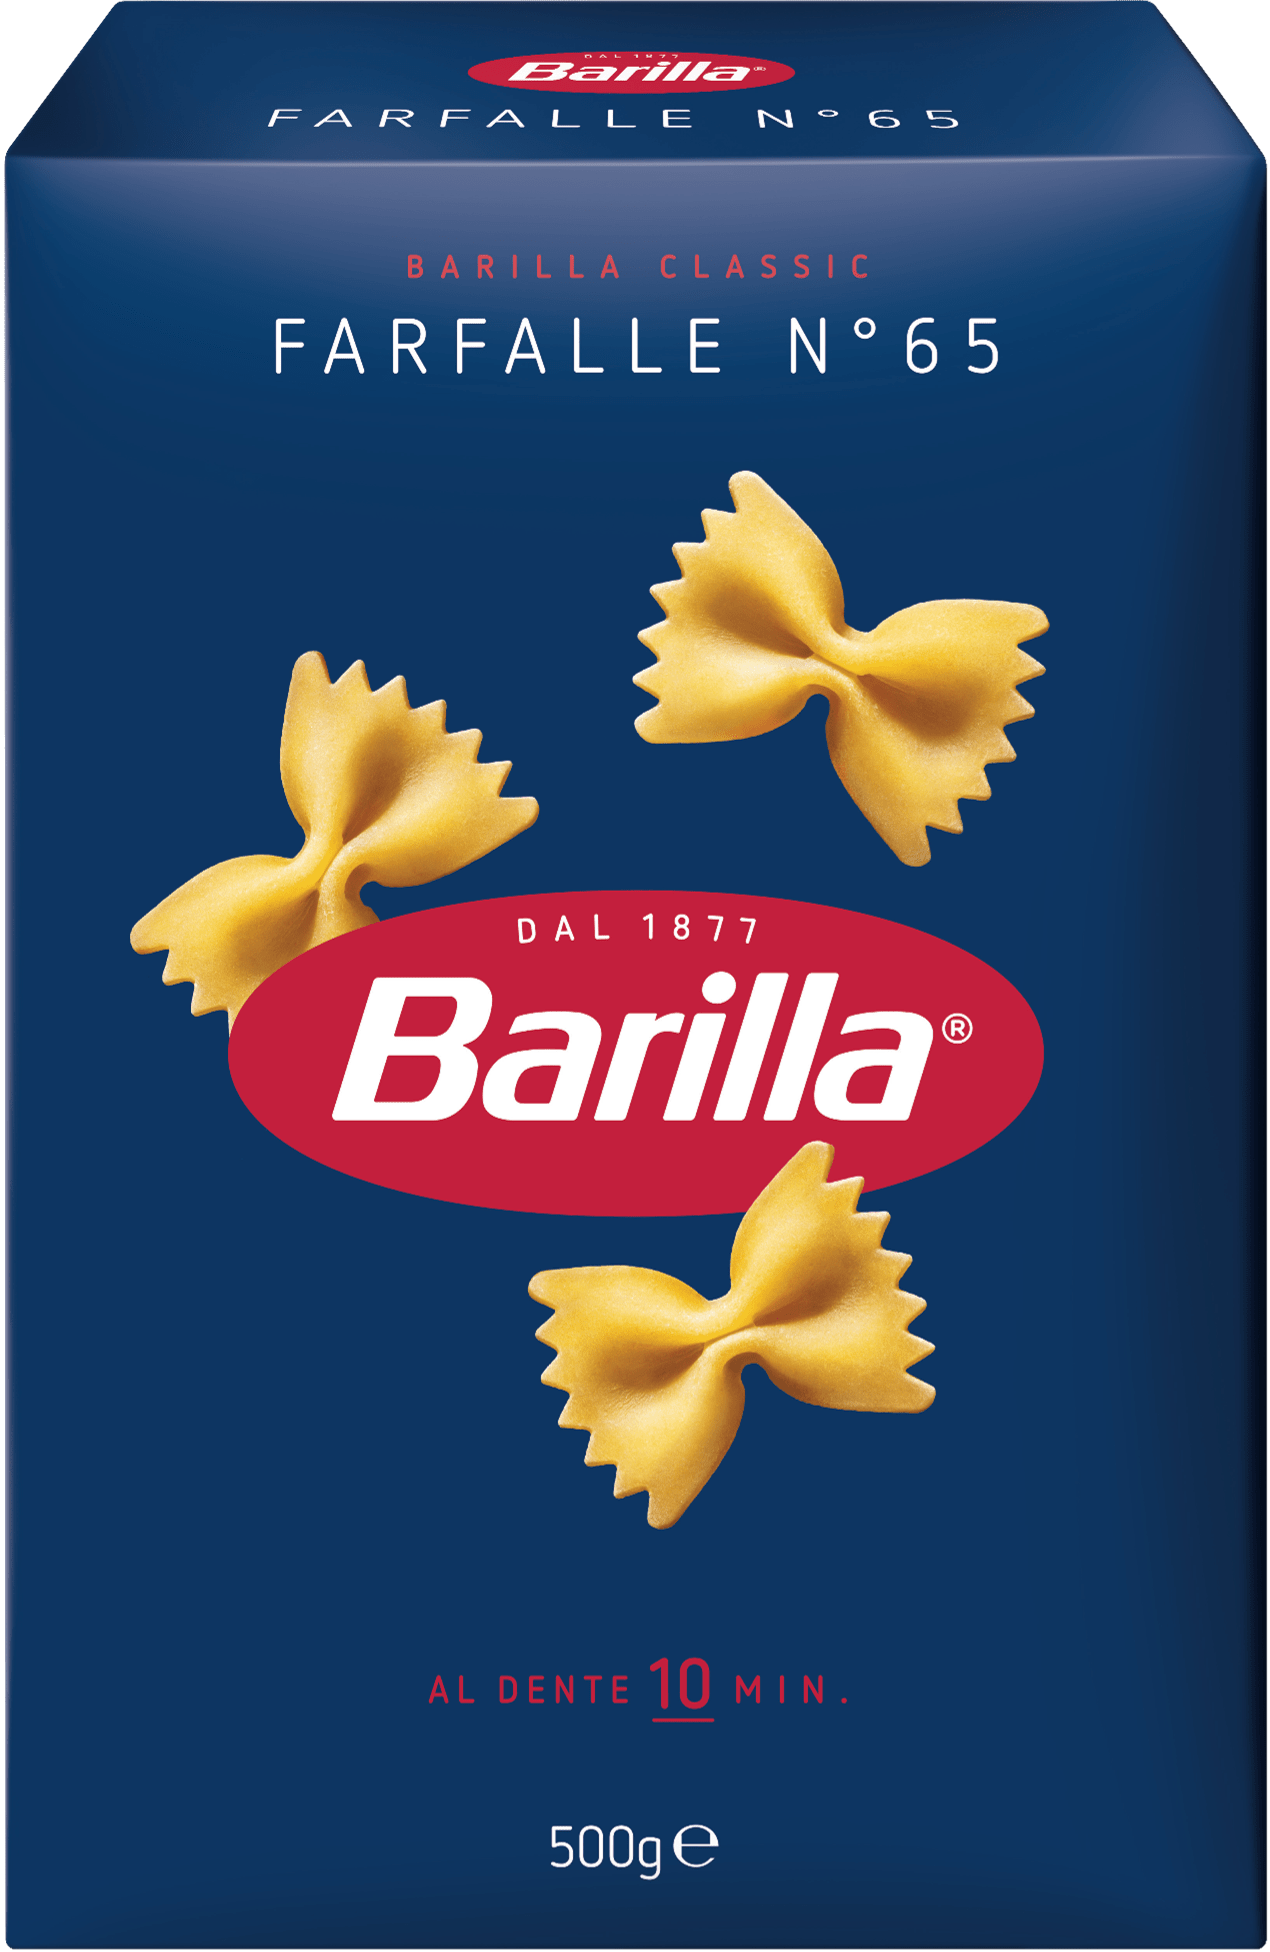 Barilla Farfalle pasta